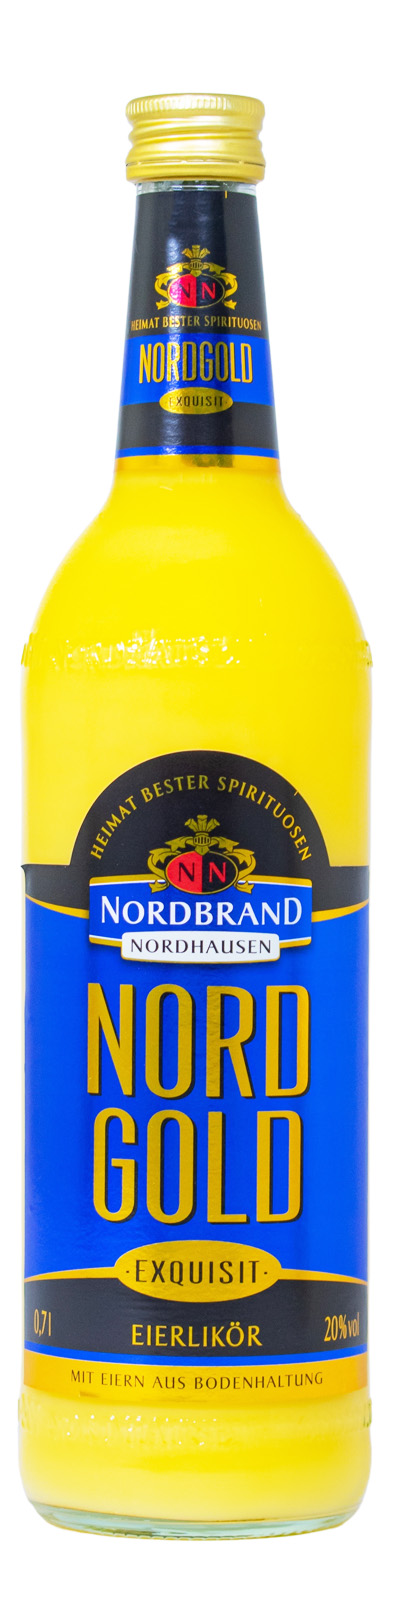 Nordgold Exquisit kaufen günstig Eierlikör